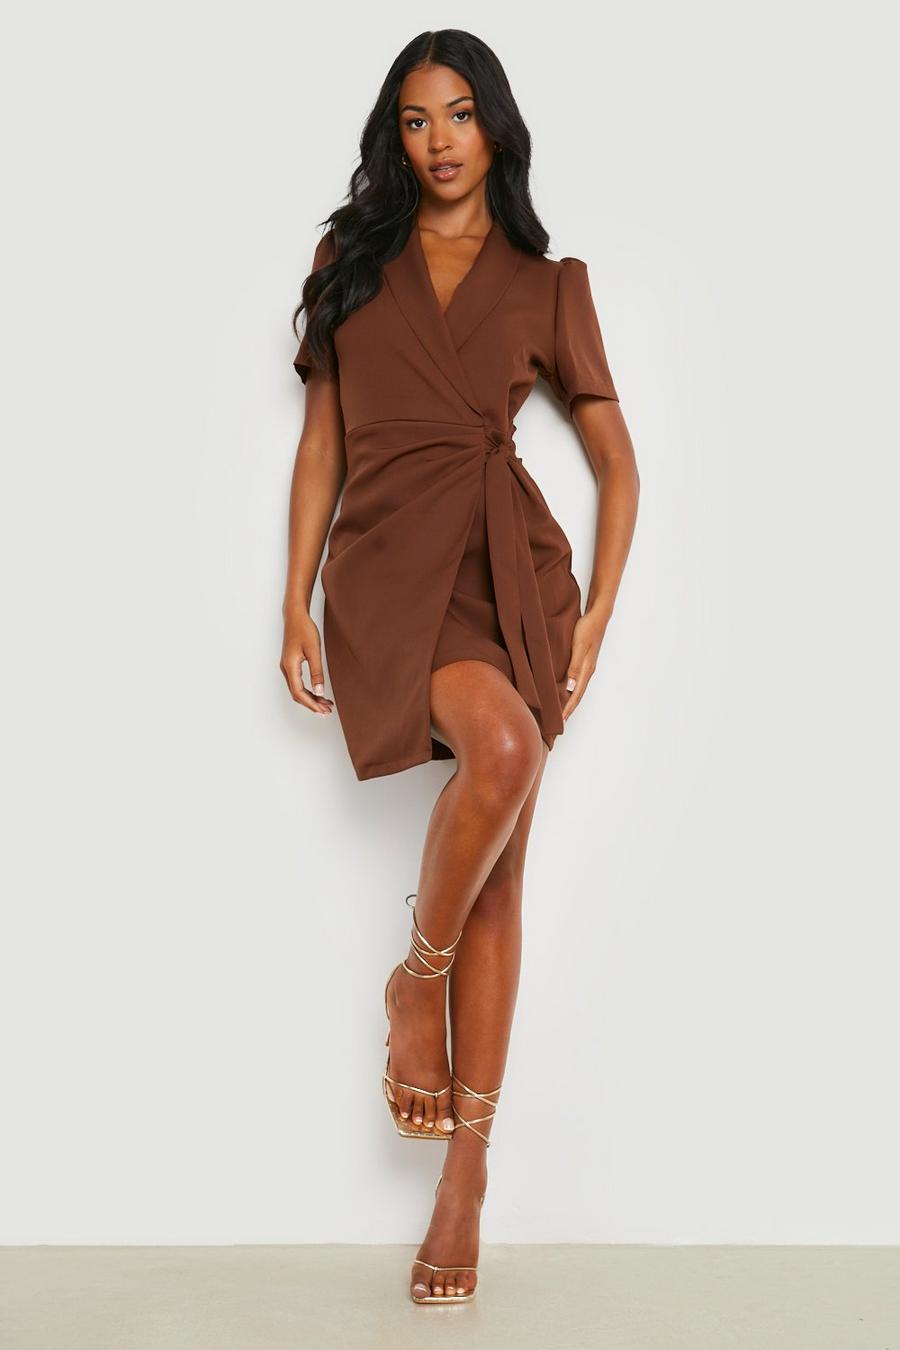 שוקולד marrón שמלת בלייזר עם שרוולים קצרים וקשירה בצד לנשים גבוהות